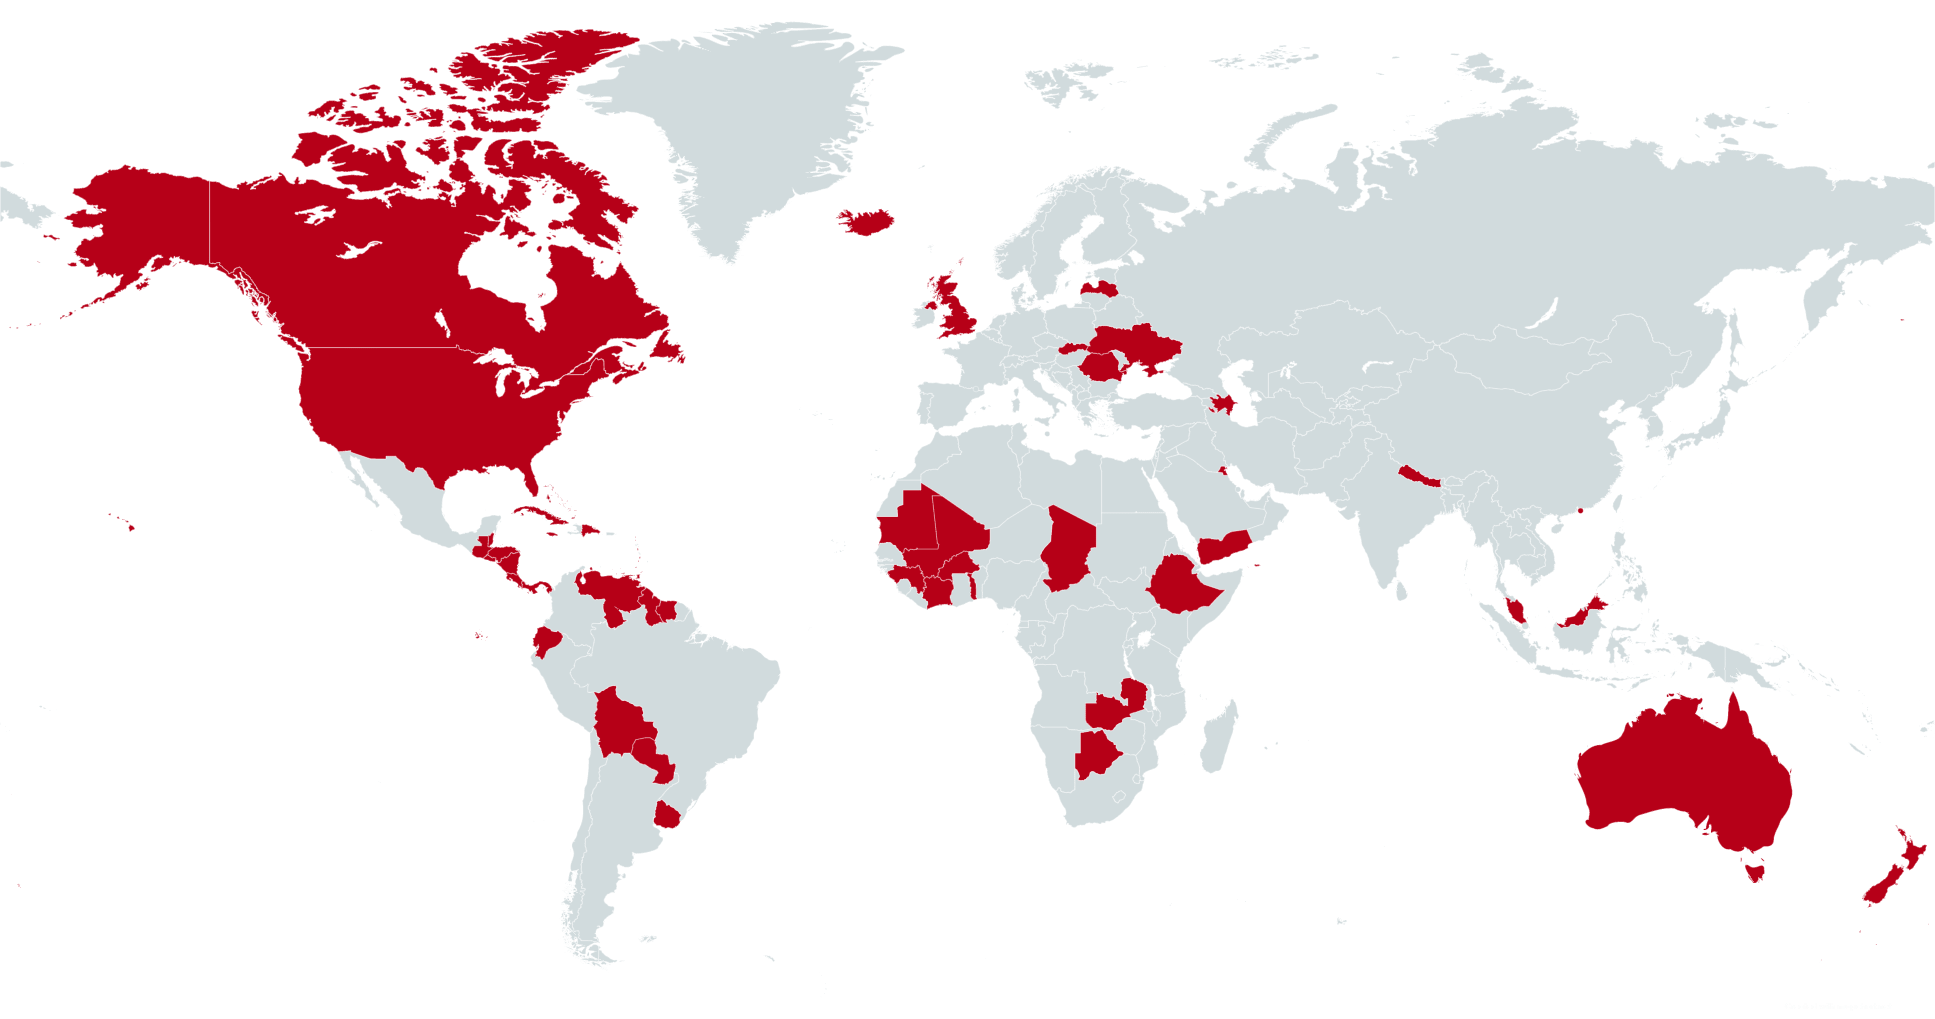 Mapa del mundo indicando los 75 países clientes de CBN